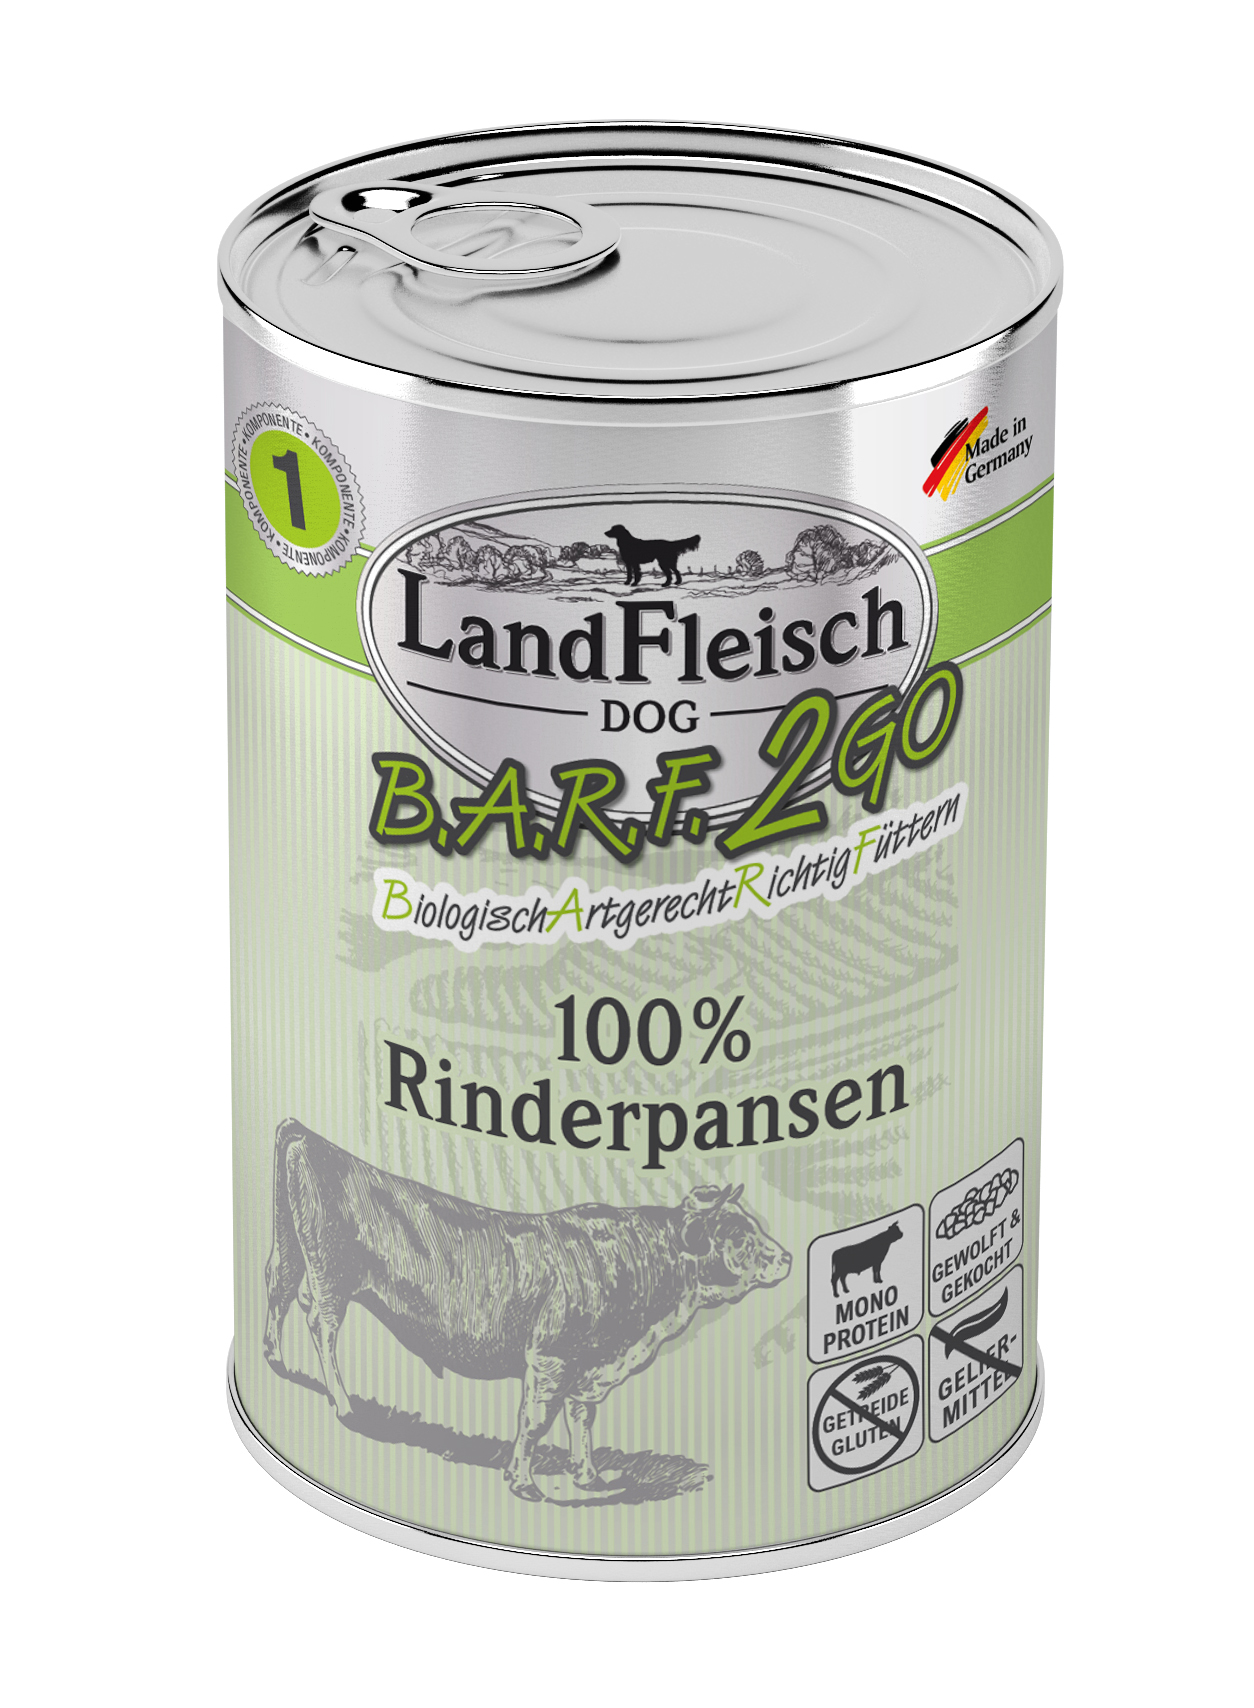 LandFleisch B.A.R.F.2GO 100 % aus Rinderpansen 400g